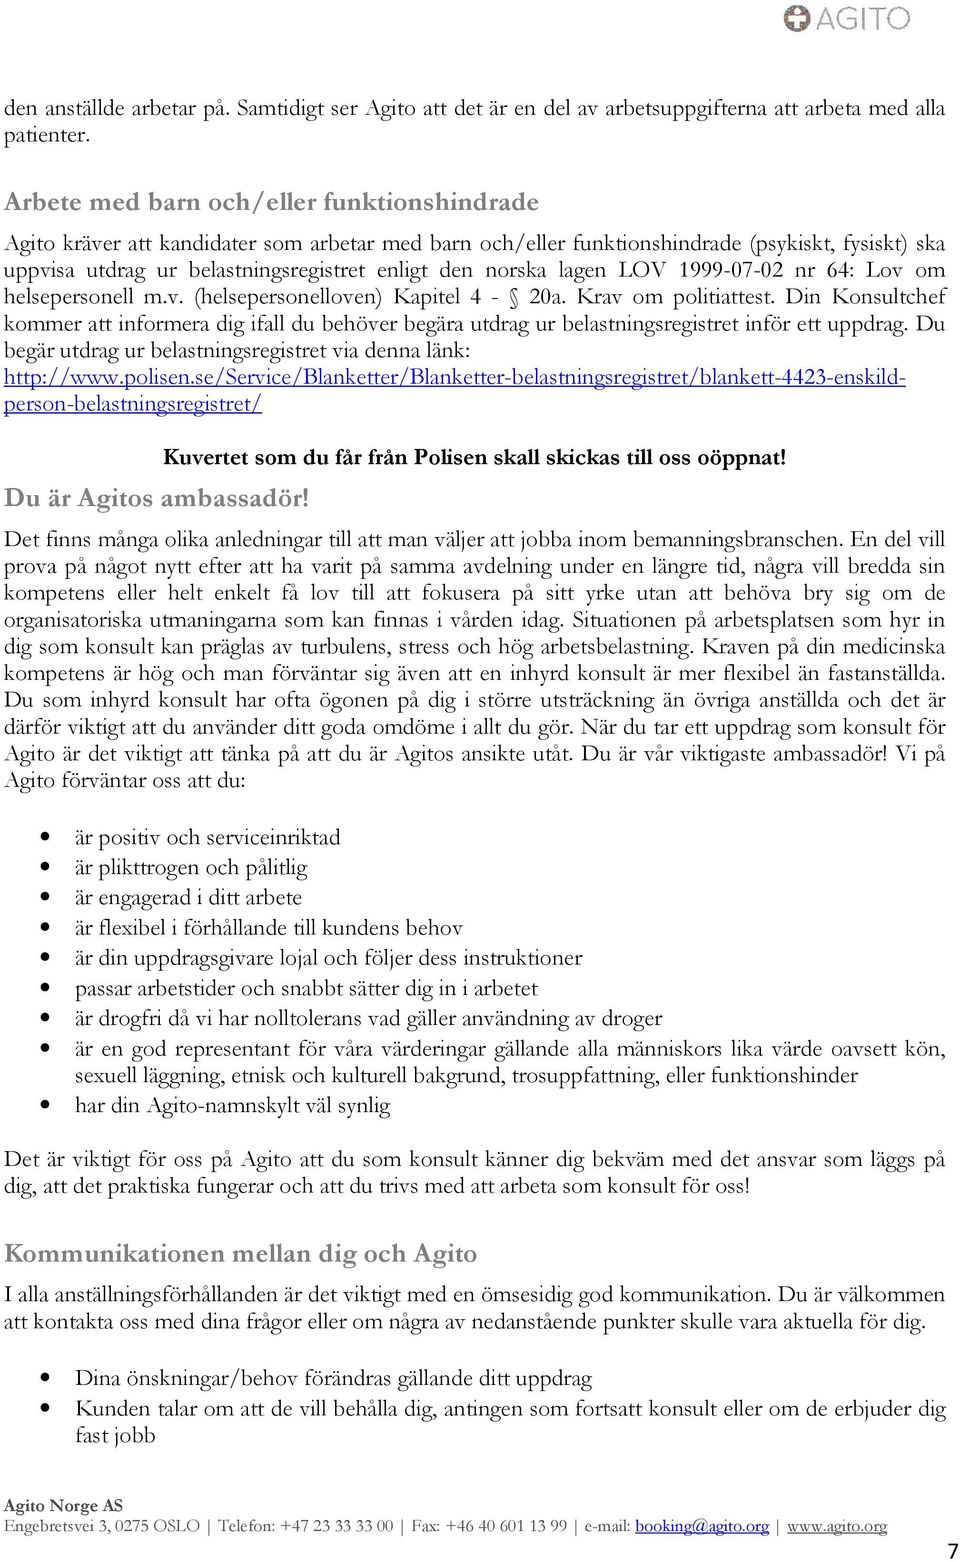 norska lagen LOV 1999-07-02 nr 64: Lov om helsepersonell m.v. (helsepersonelloven) Kapitel 4-20a. Krav om politiattest.